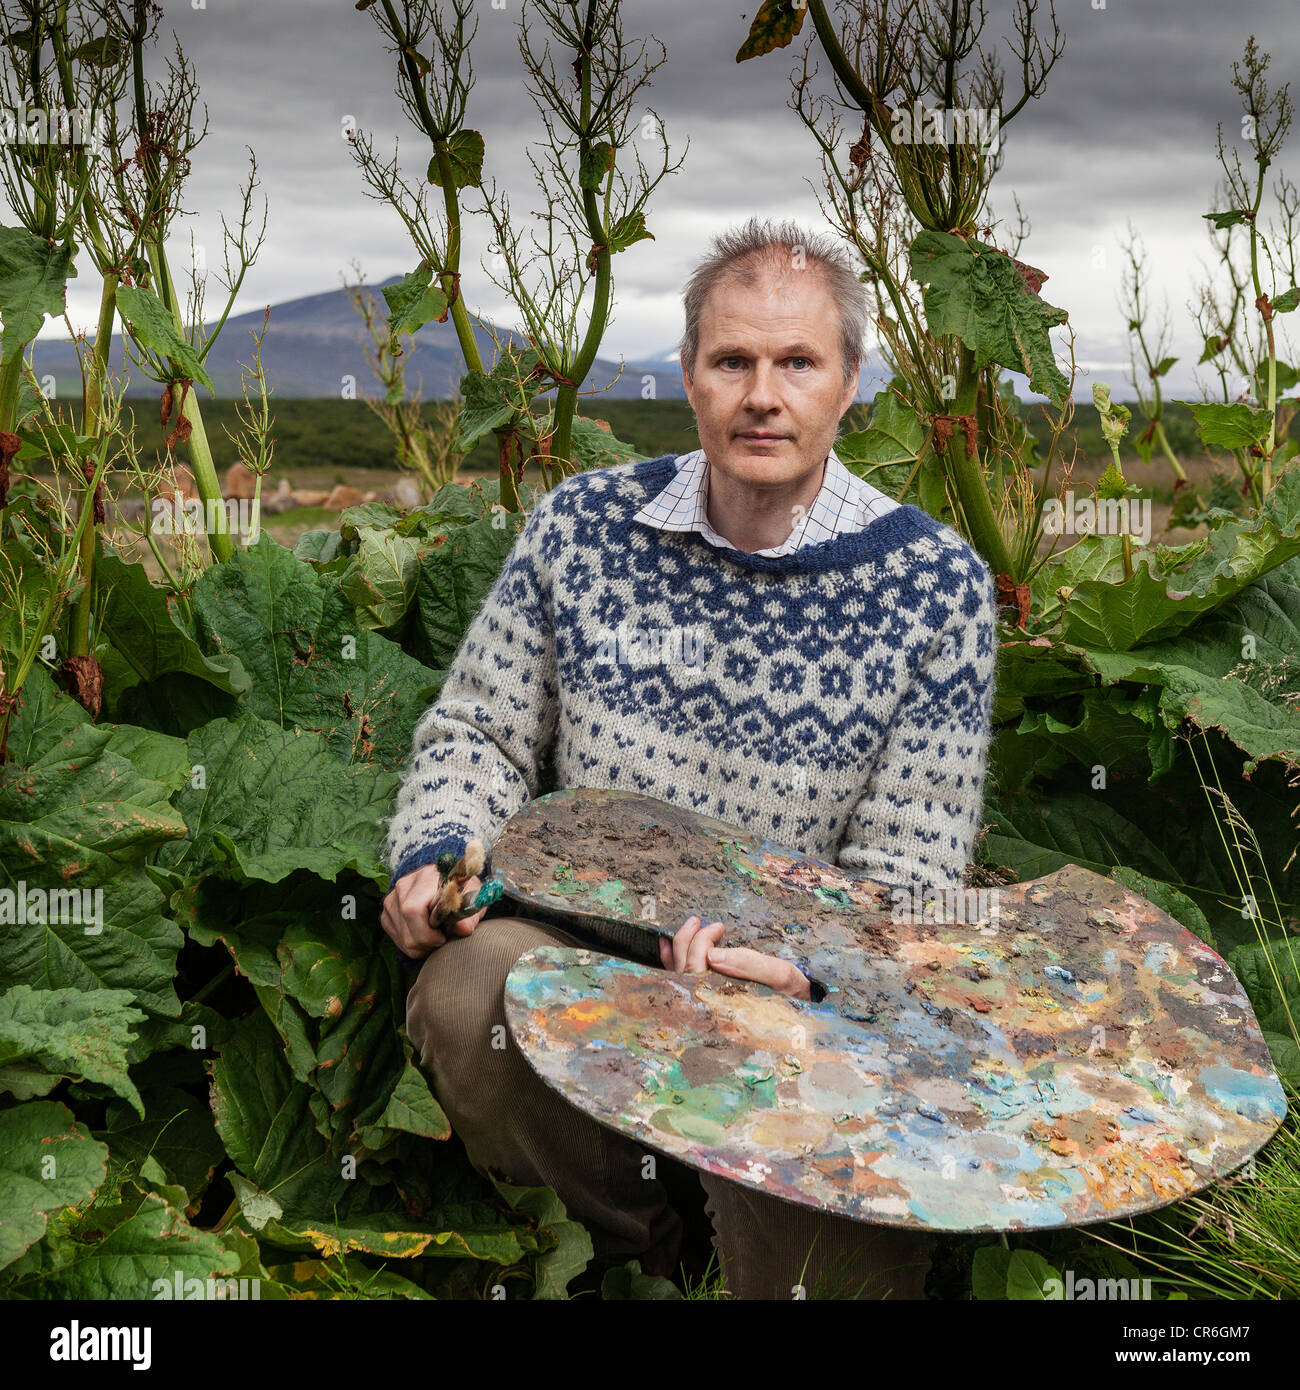 Palette avec l'artiste entouré de plantes, la rhubarbe de Borgarfjordur Islande Banque D'Images